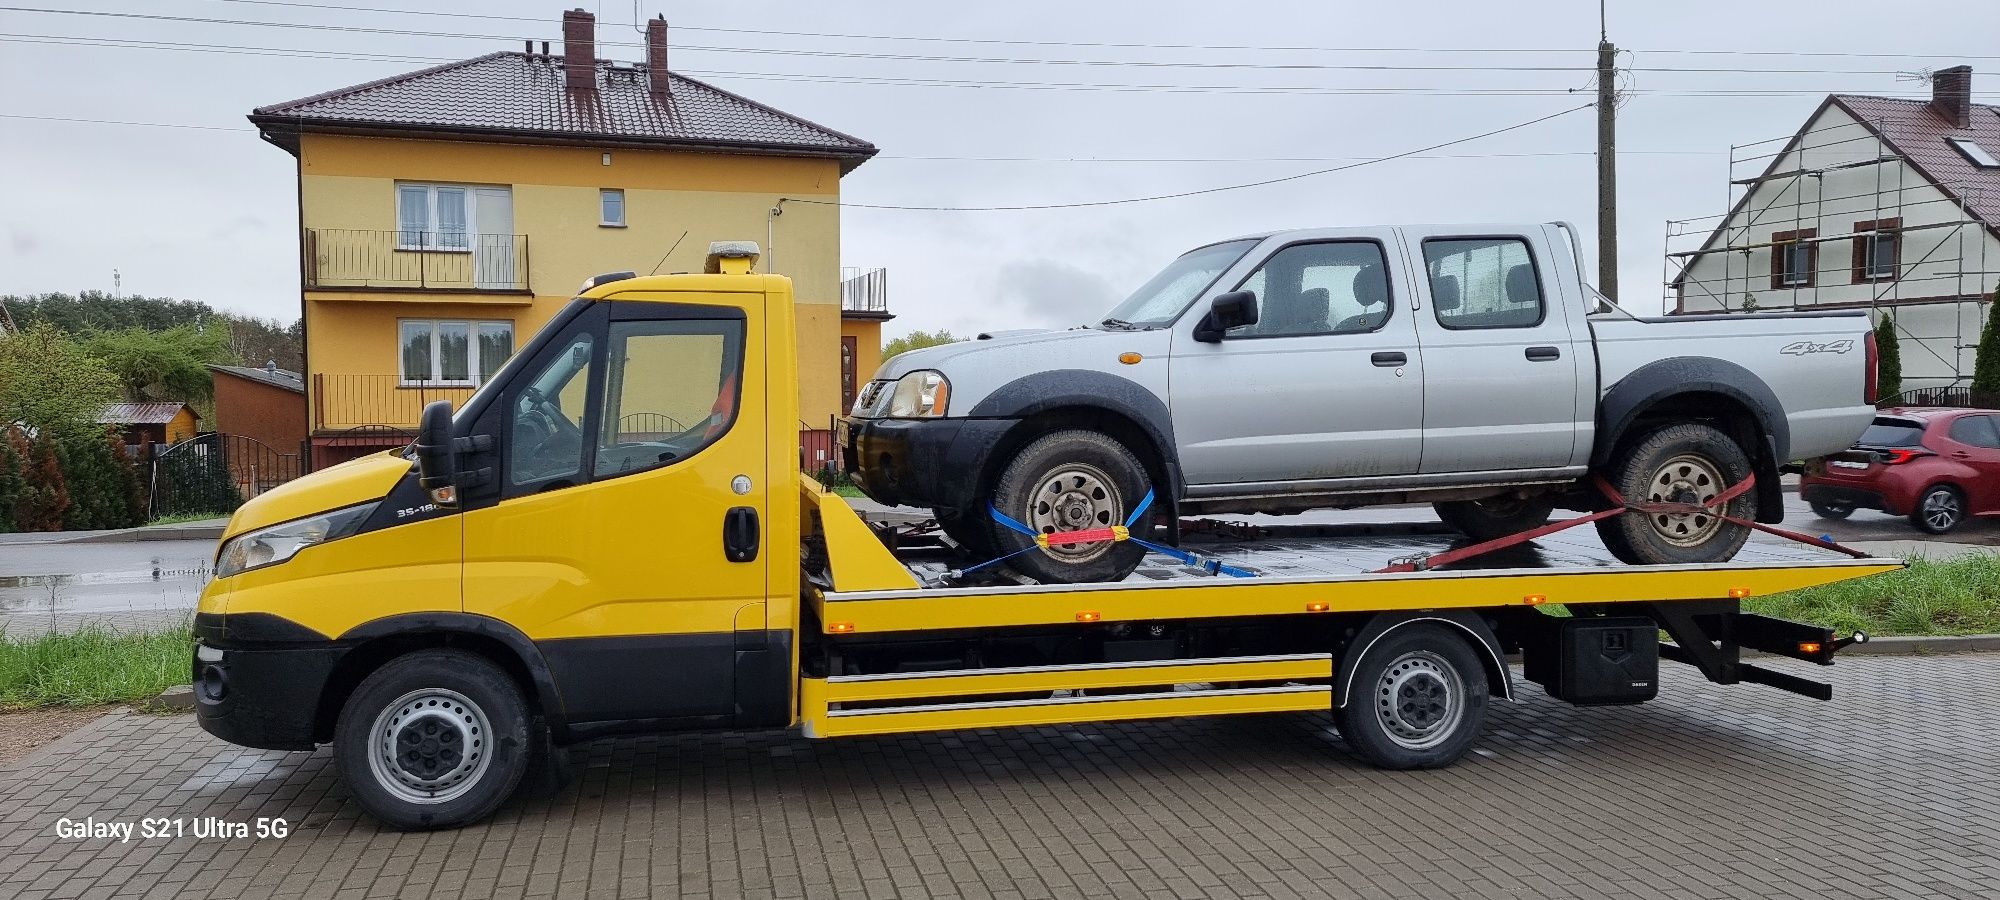 Pomoc Drogowa-Kasacja Pojazdów-Skup Aut